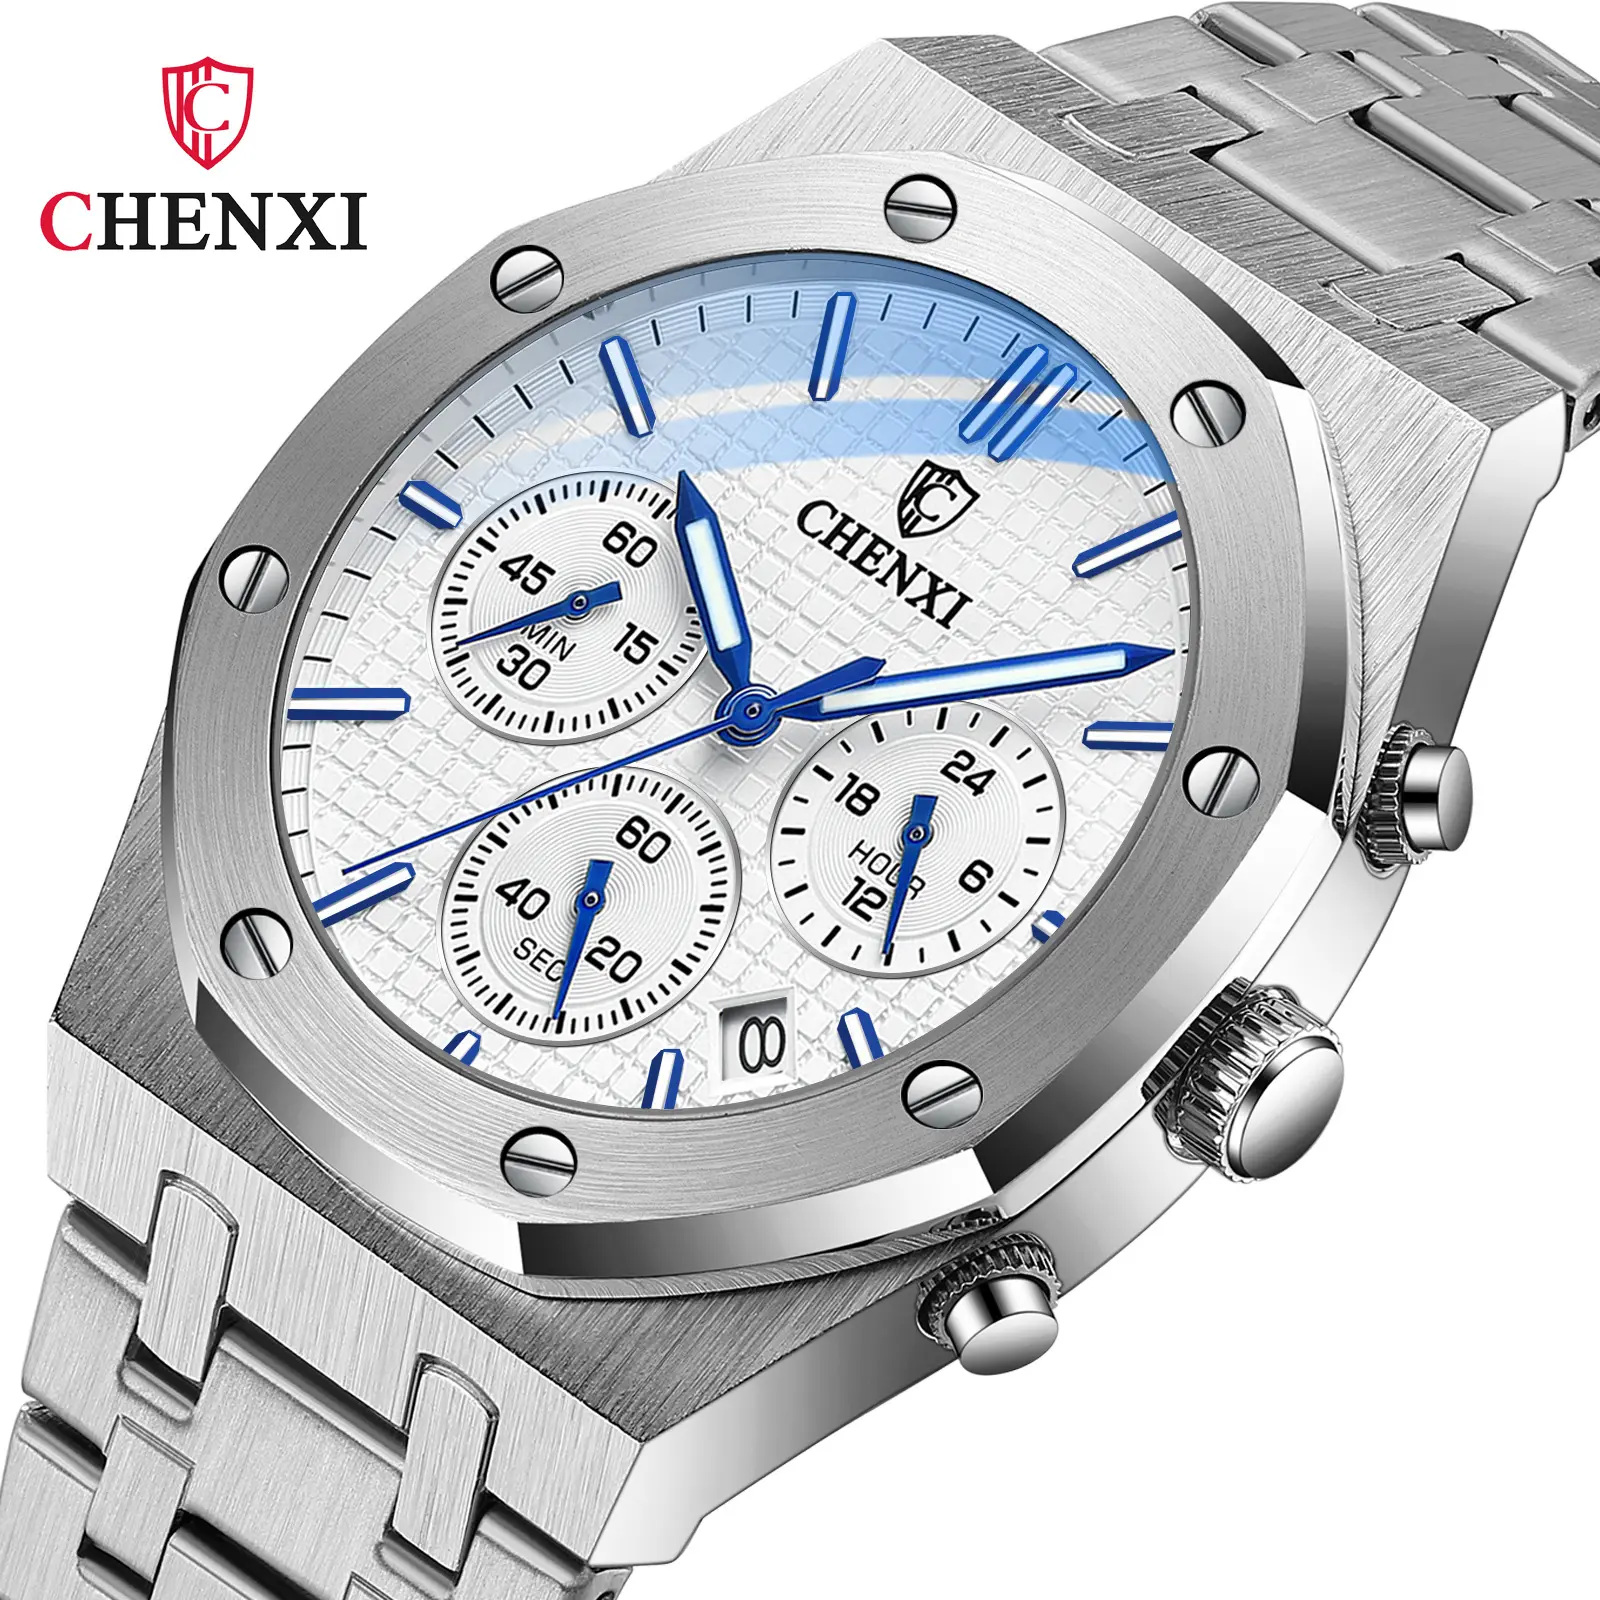 Chenxi 948 Luxury Wristwatches Men'S Quartz Watch Watch Stainless Steel Chronograph Wrist Watches For Men